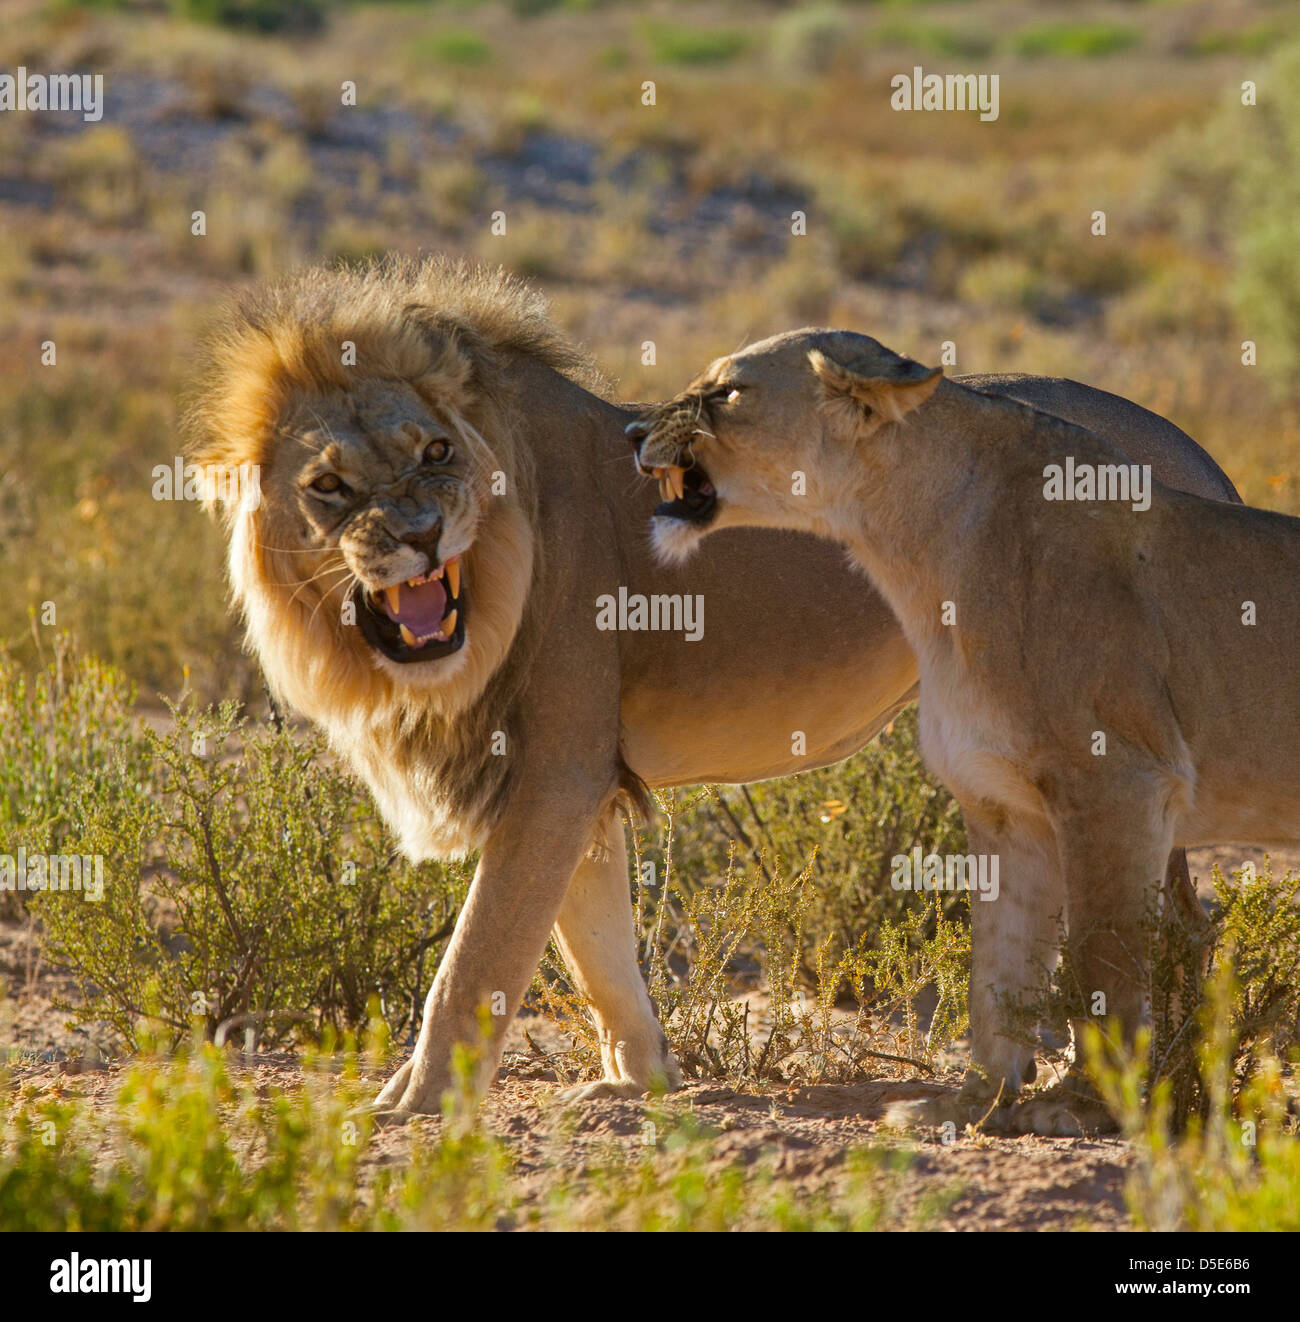 Lion giovane corteggiamento aggressione del comportamento Foto Stock